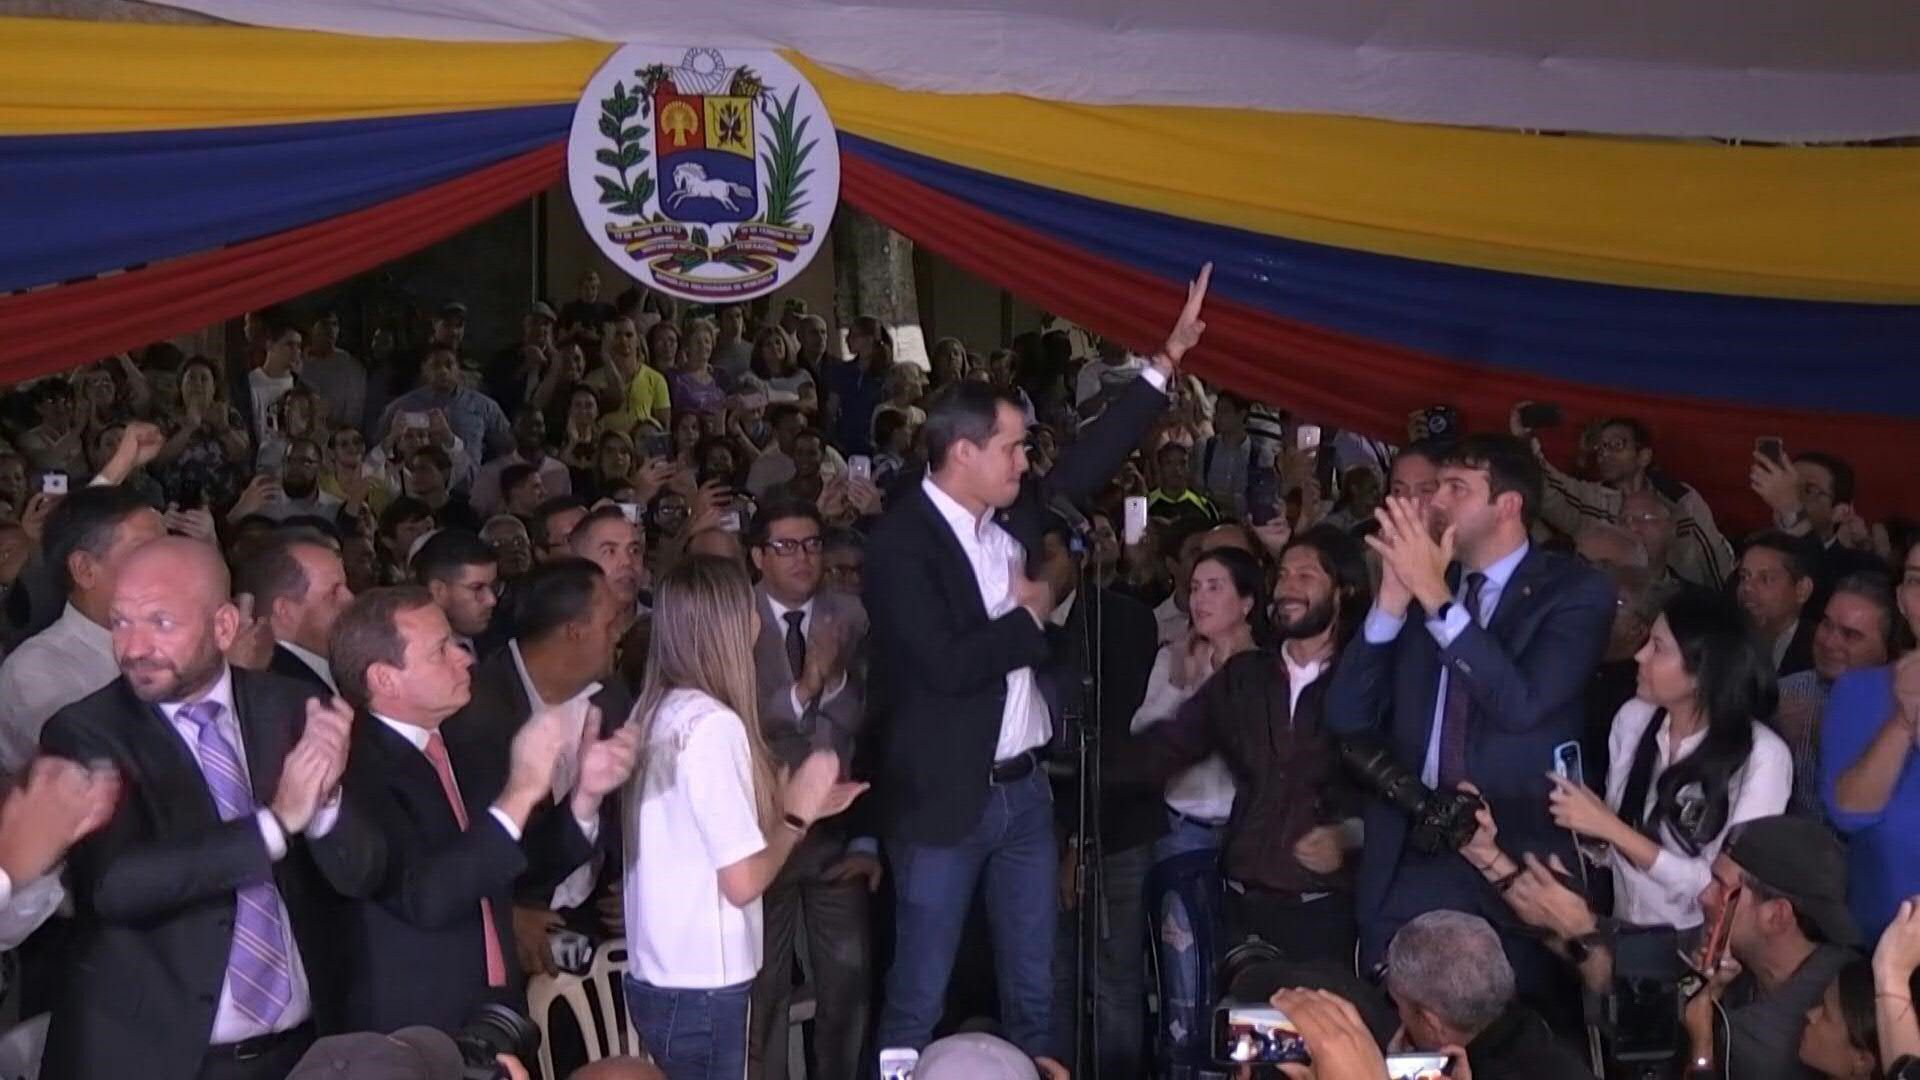 El líder opositor Juan Guaidó regresó a Venezuela el martes tras una gira internacional de 23 días, en medio empujones e insultos entre sus seguidores y partidarios del presidente Nicolás Maduro. Durante un mitin en Caracas, el opositor dijo los mecanismos de presión “van a aumentar”.